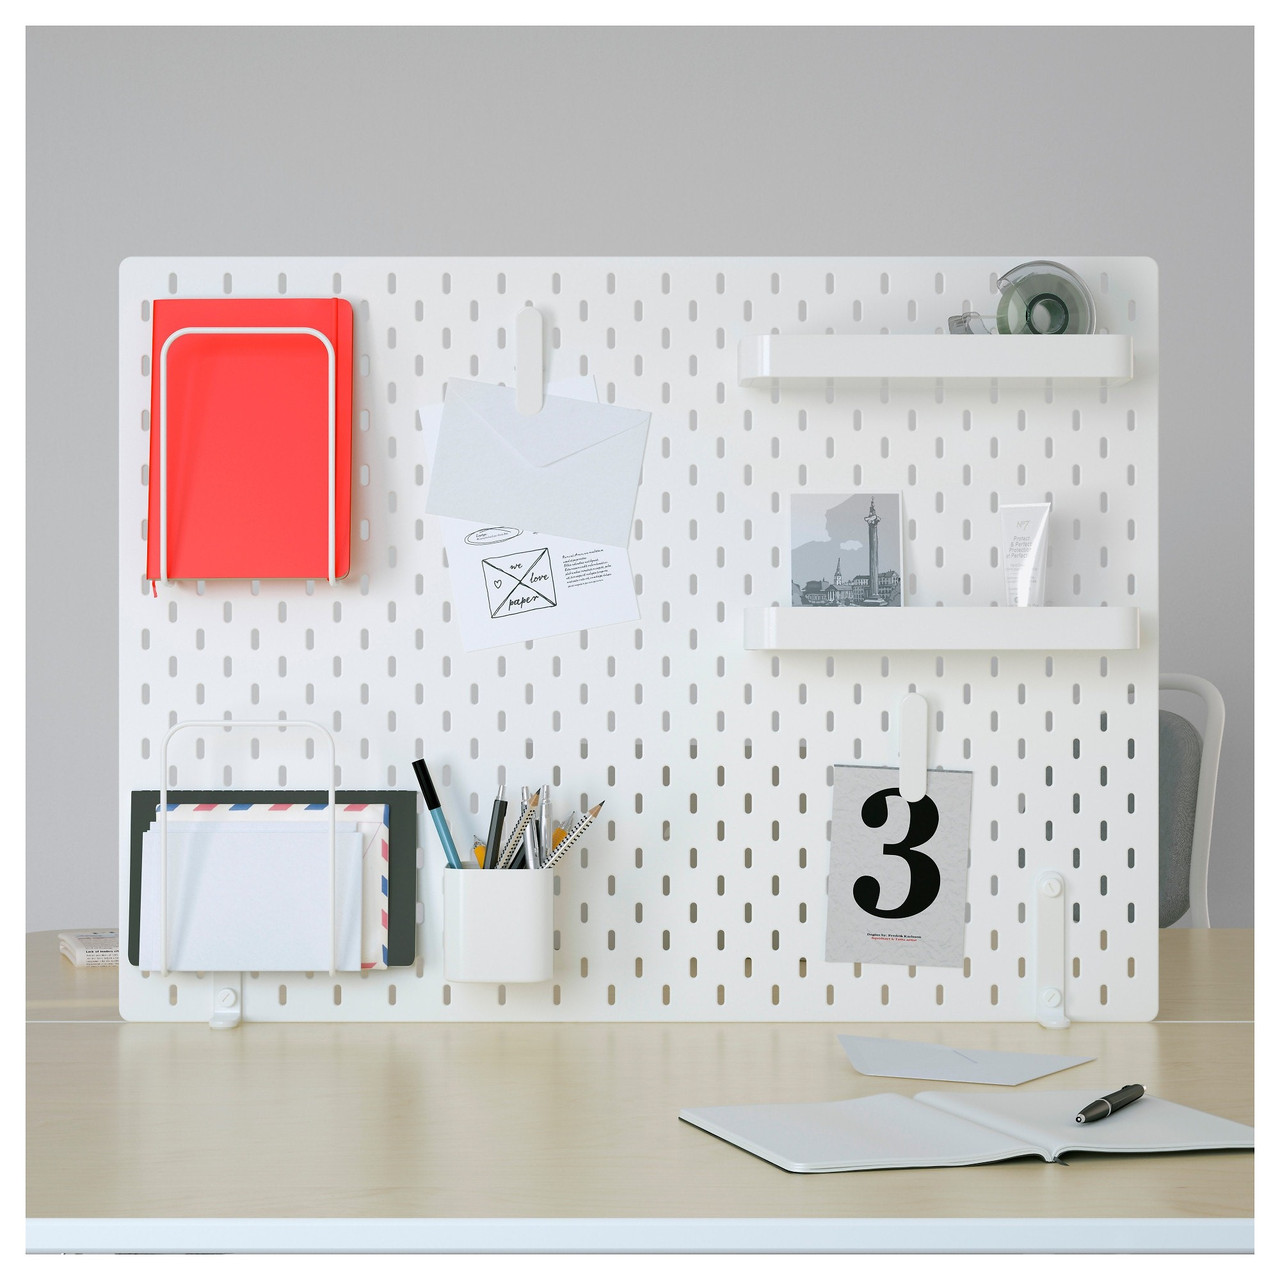 Настенная панель СКОДИС комбинация, белый ИКЕА, IKEA